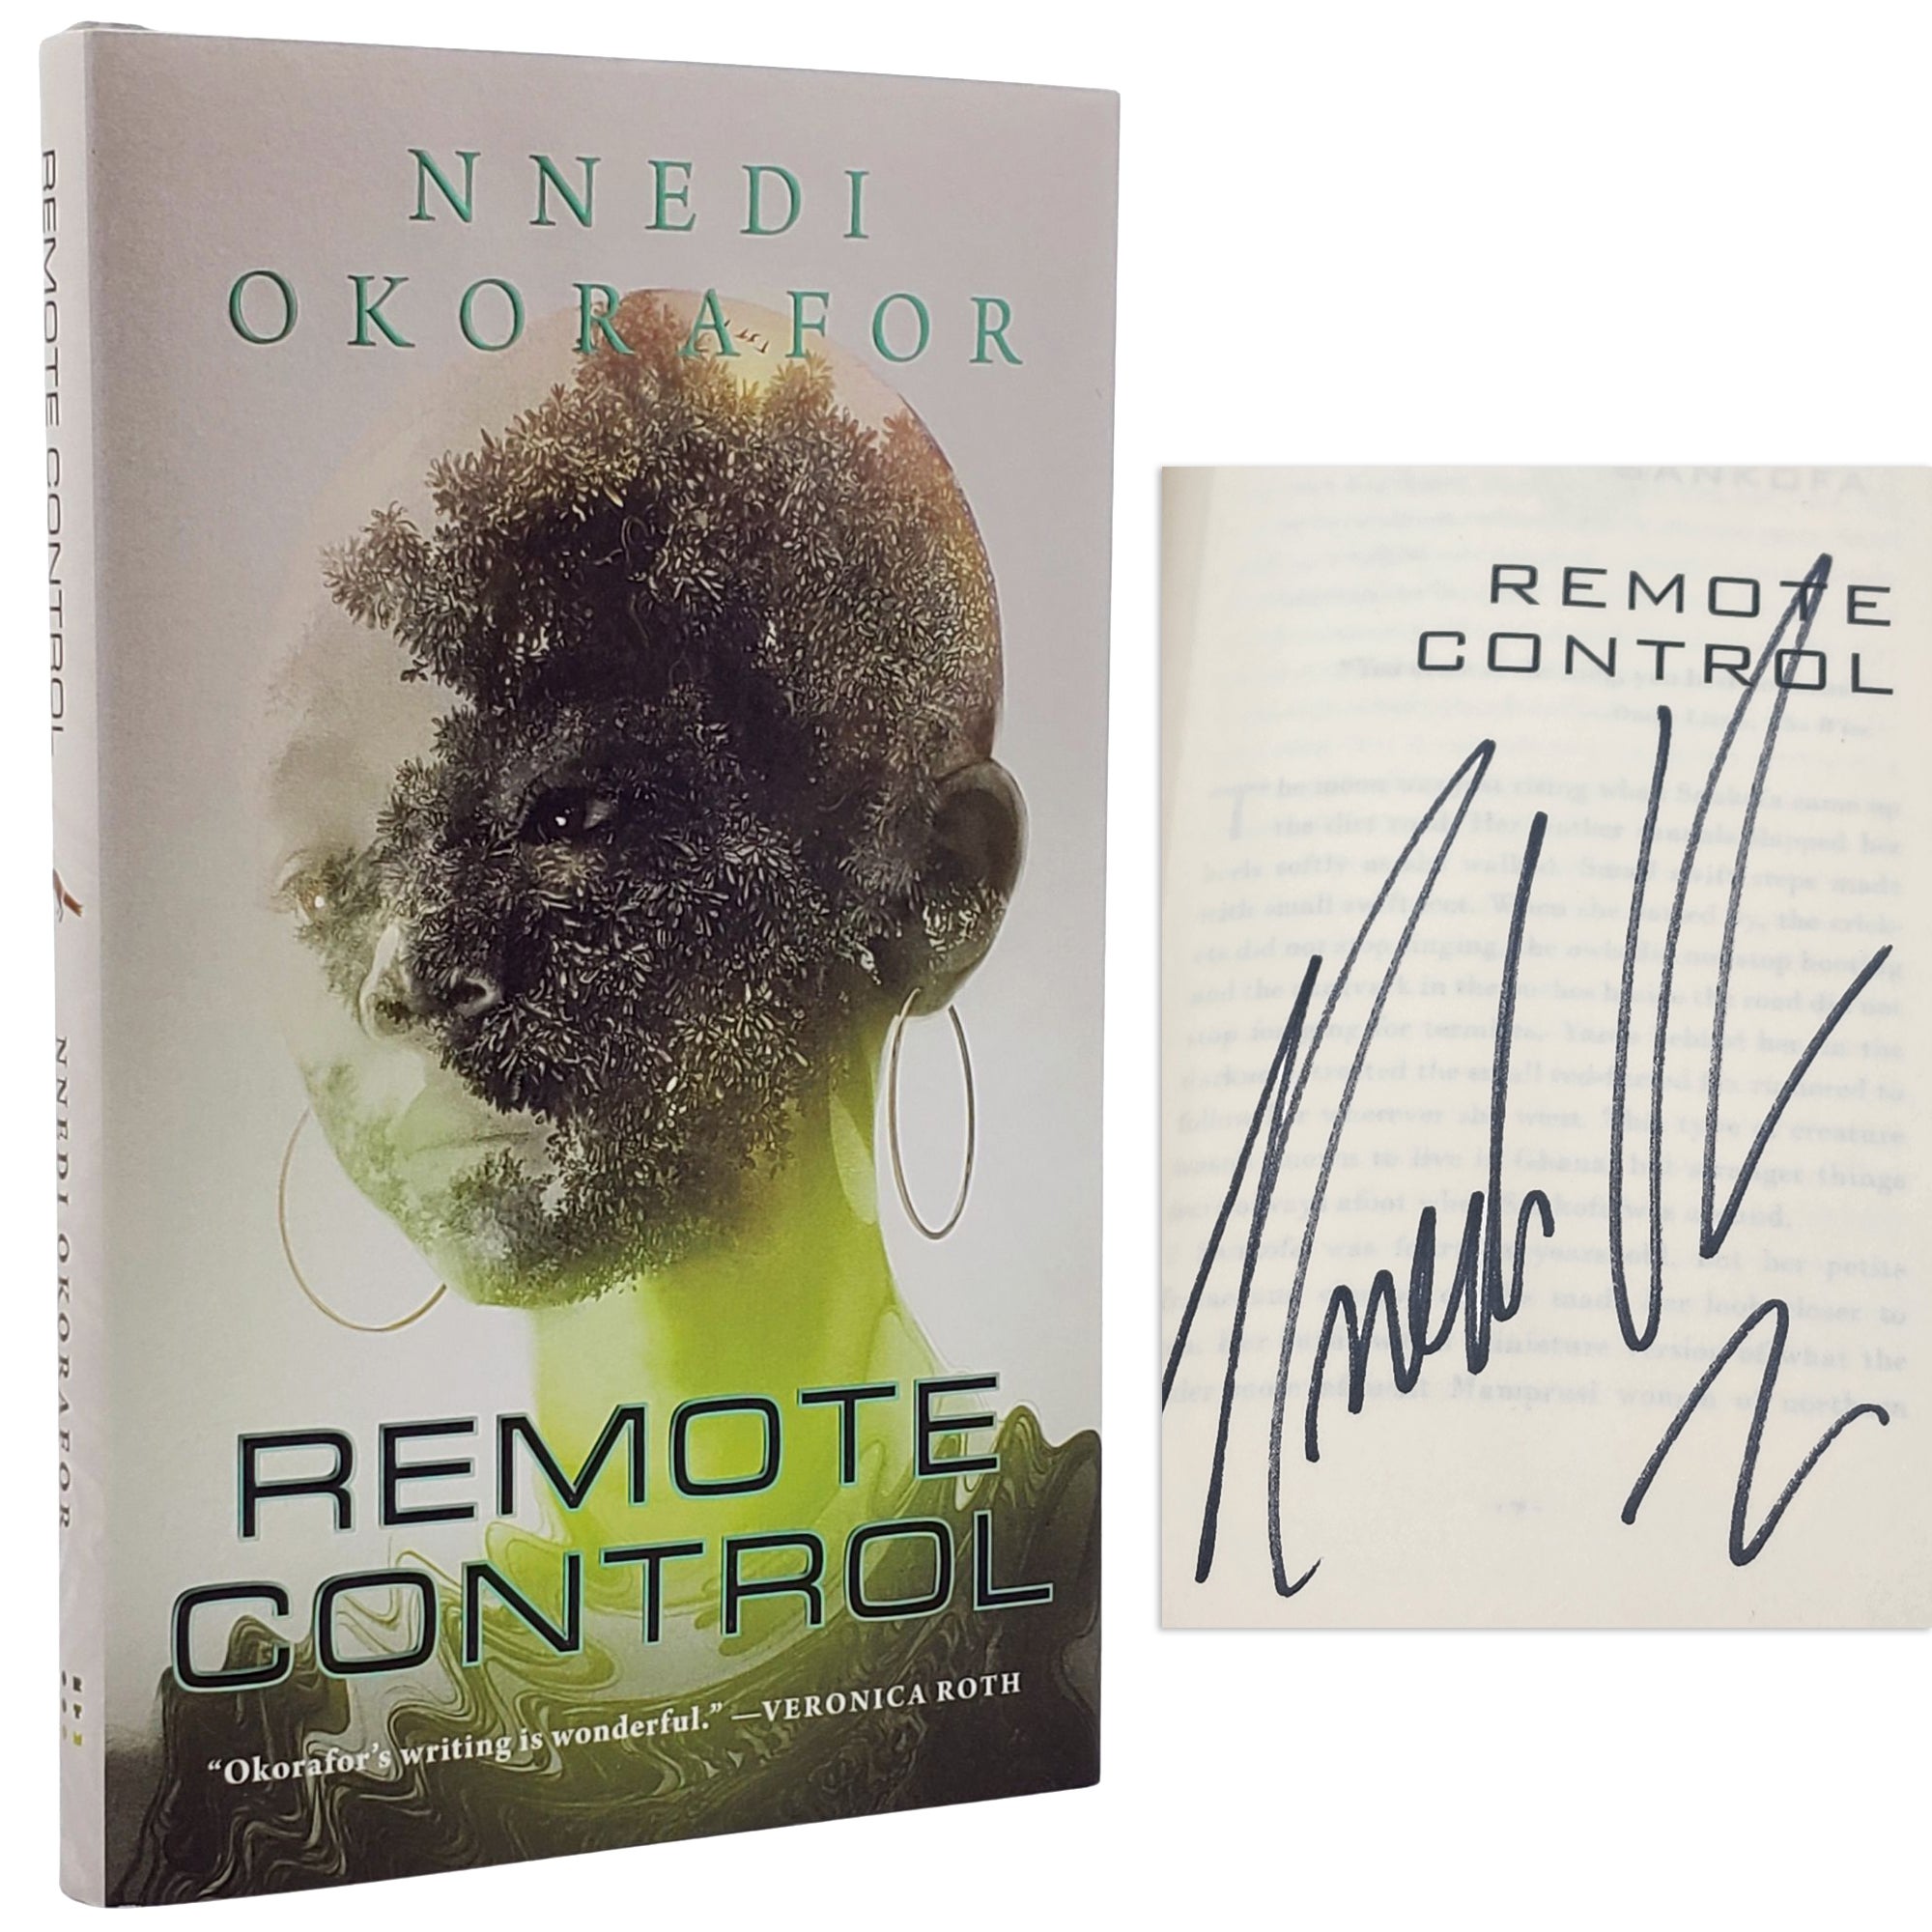 [Book #50956] REMOTE CONTROL. Nnedi Okorafor.